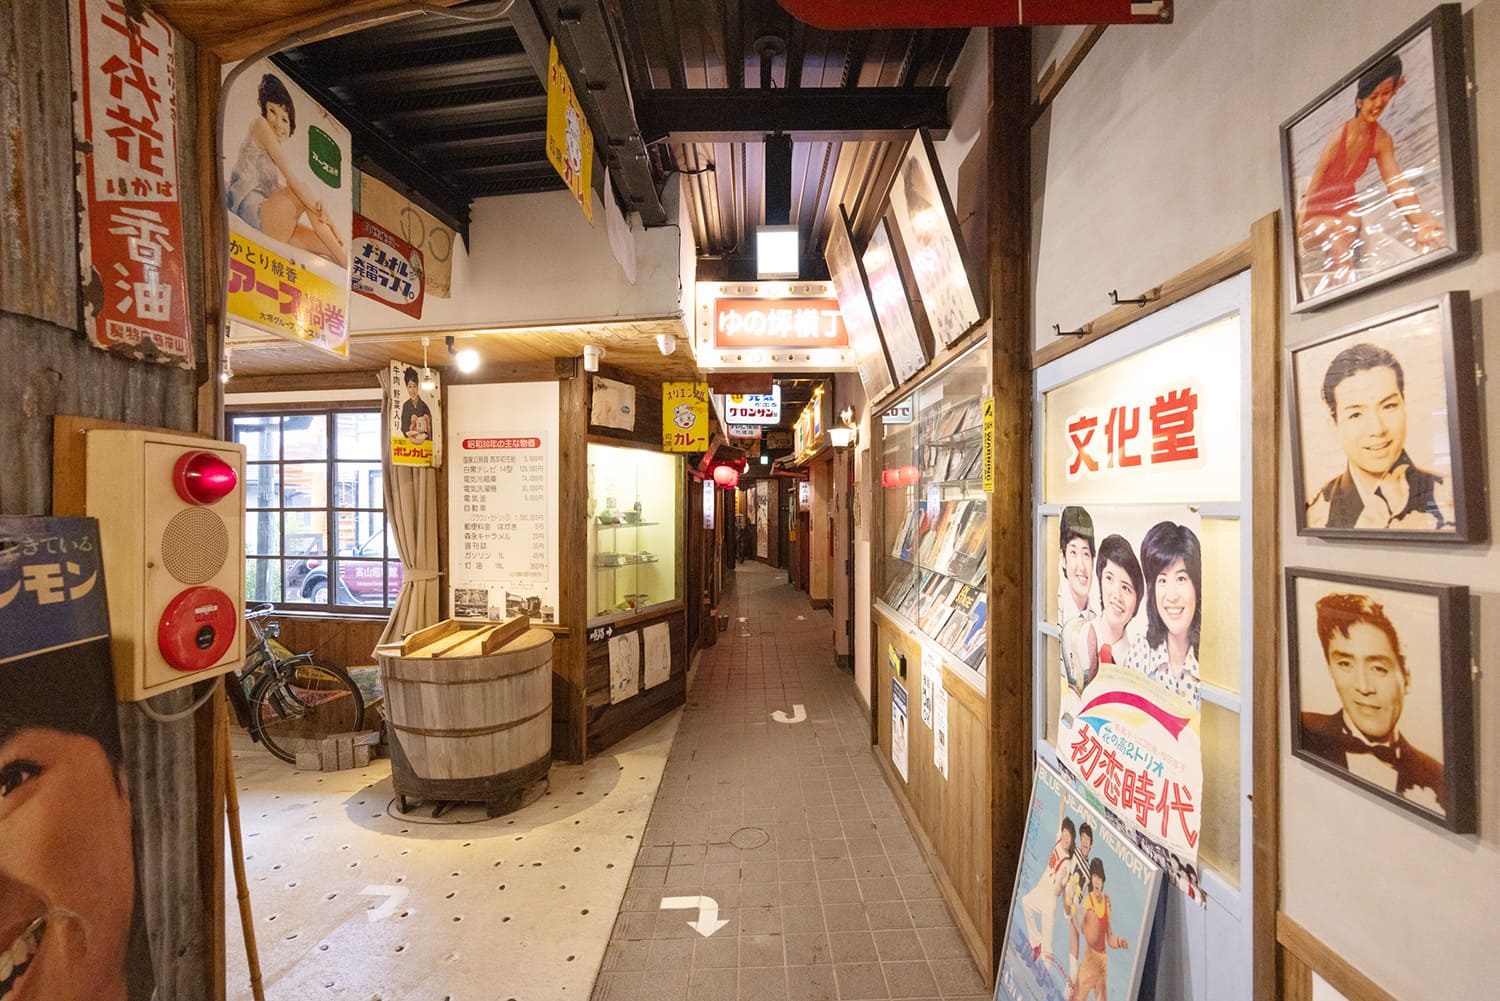 昭和の町並みはカラフルでキッチュ。広々とした館内は、どこも写真撮影が可能